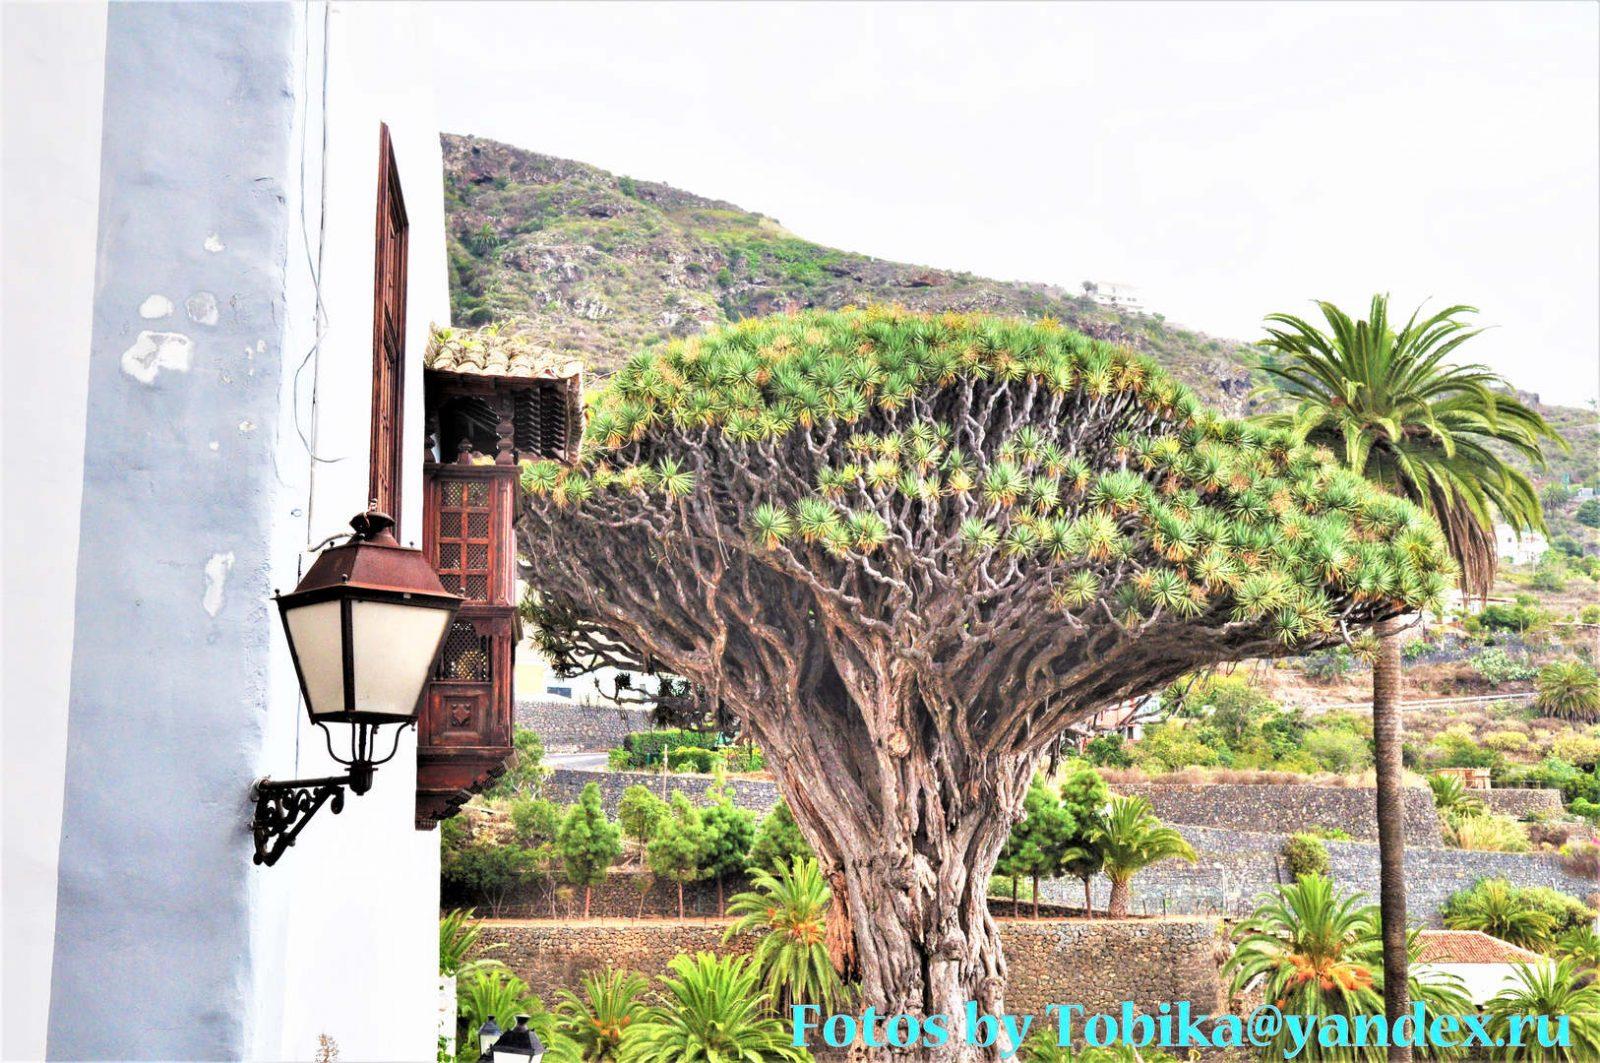 Icod de los Vinos (the dragon tree)